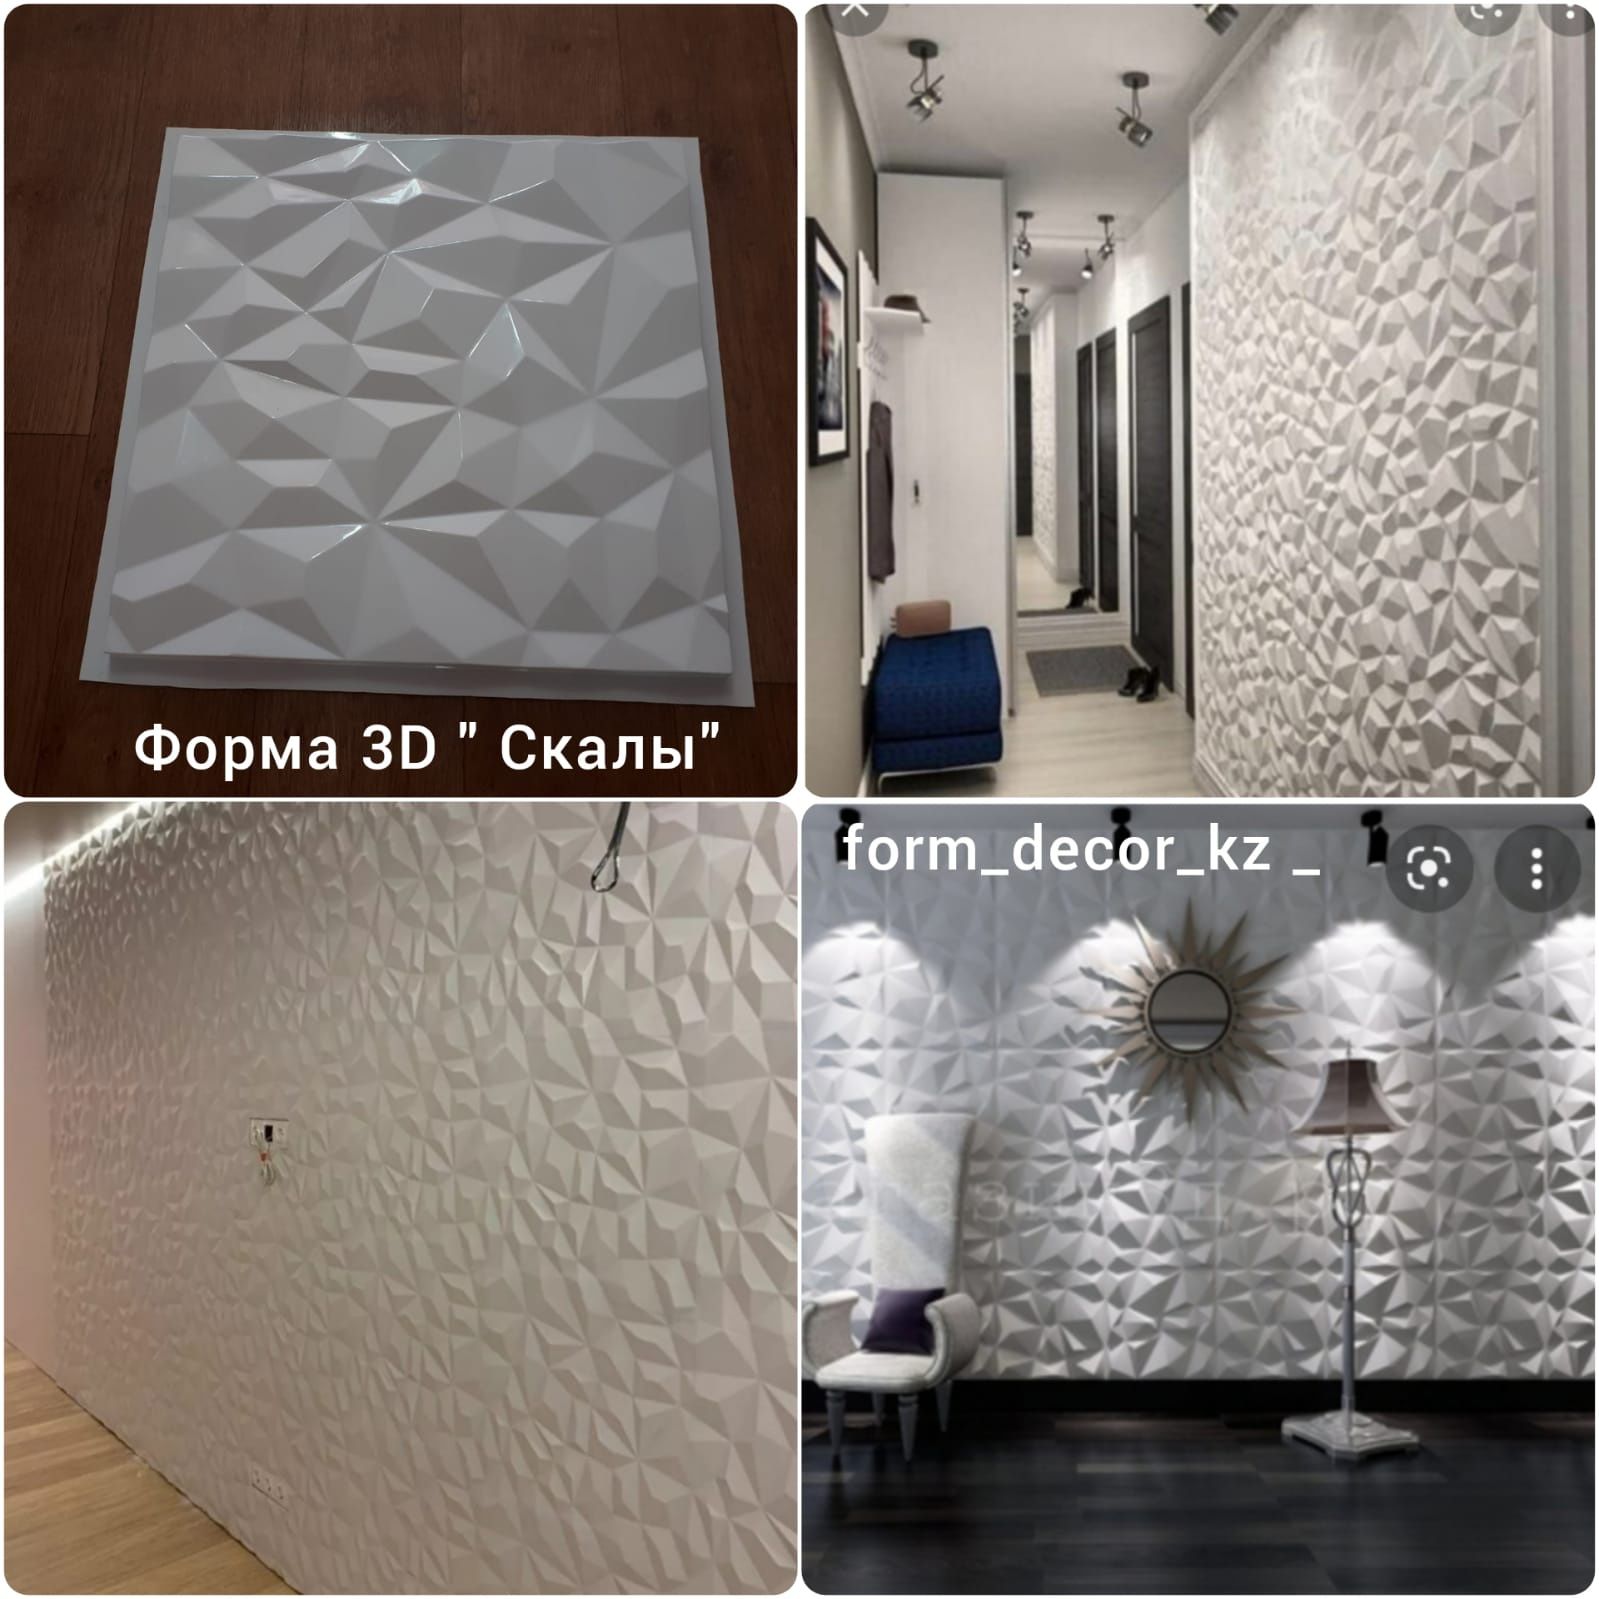 3D Декоративные панели